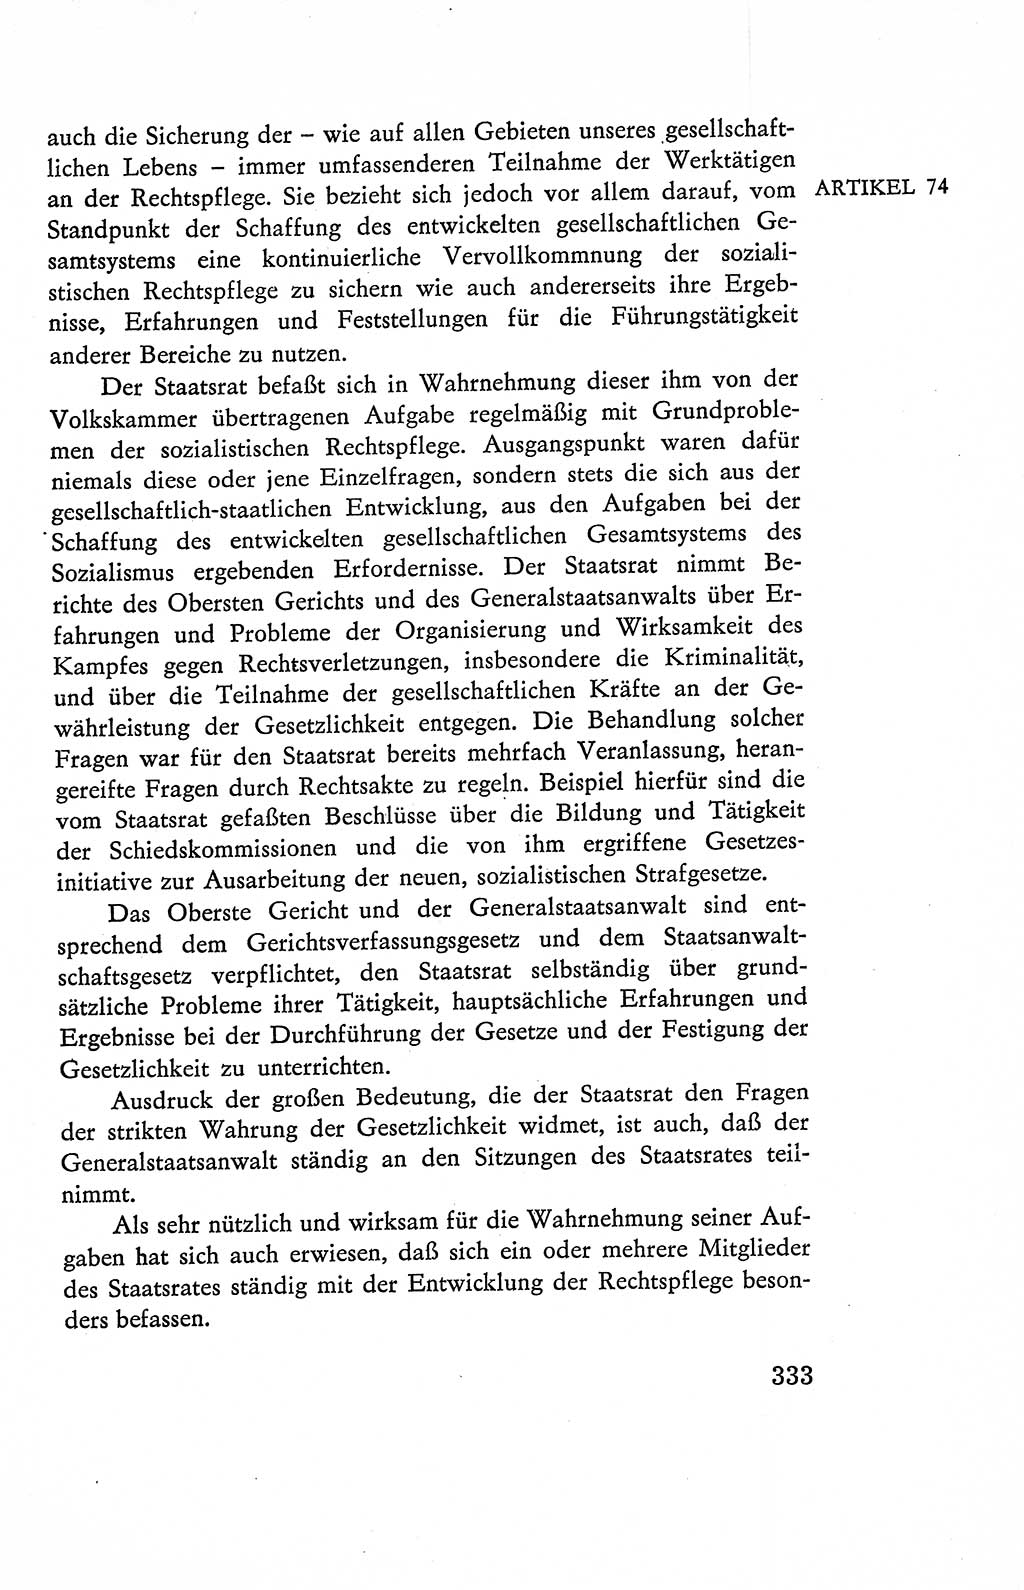 Verfassung der Deutschen Demokratischen Republik (DDR), Dokumente, Kommentar 1969, Band 2, Seite 333 (Verf. DDR Dok. Komm. 1969, Bd. 2, S. 333)